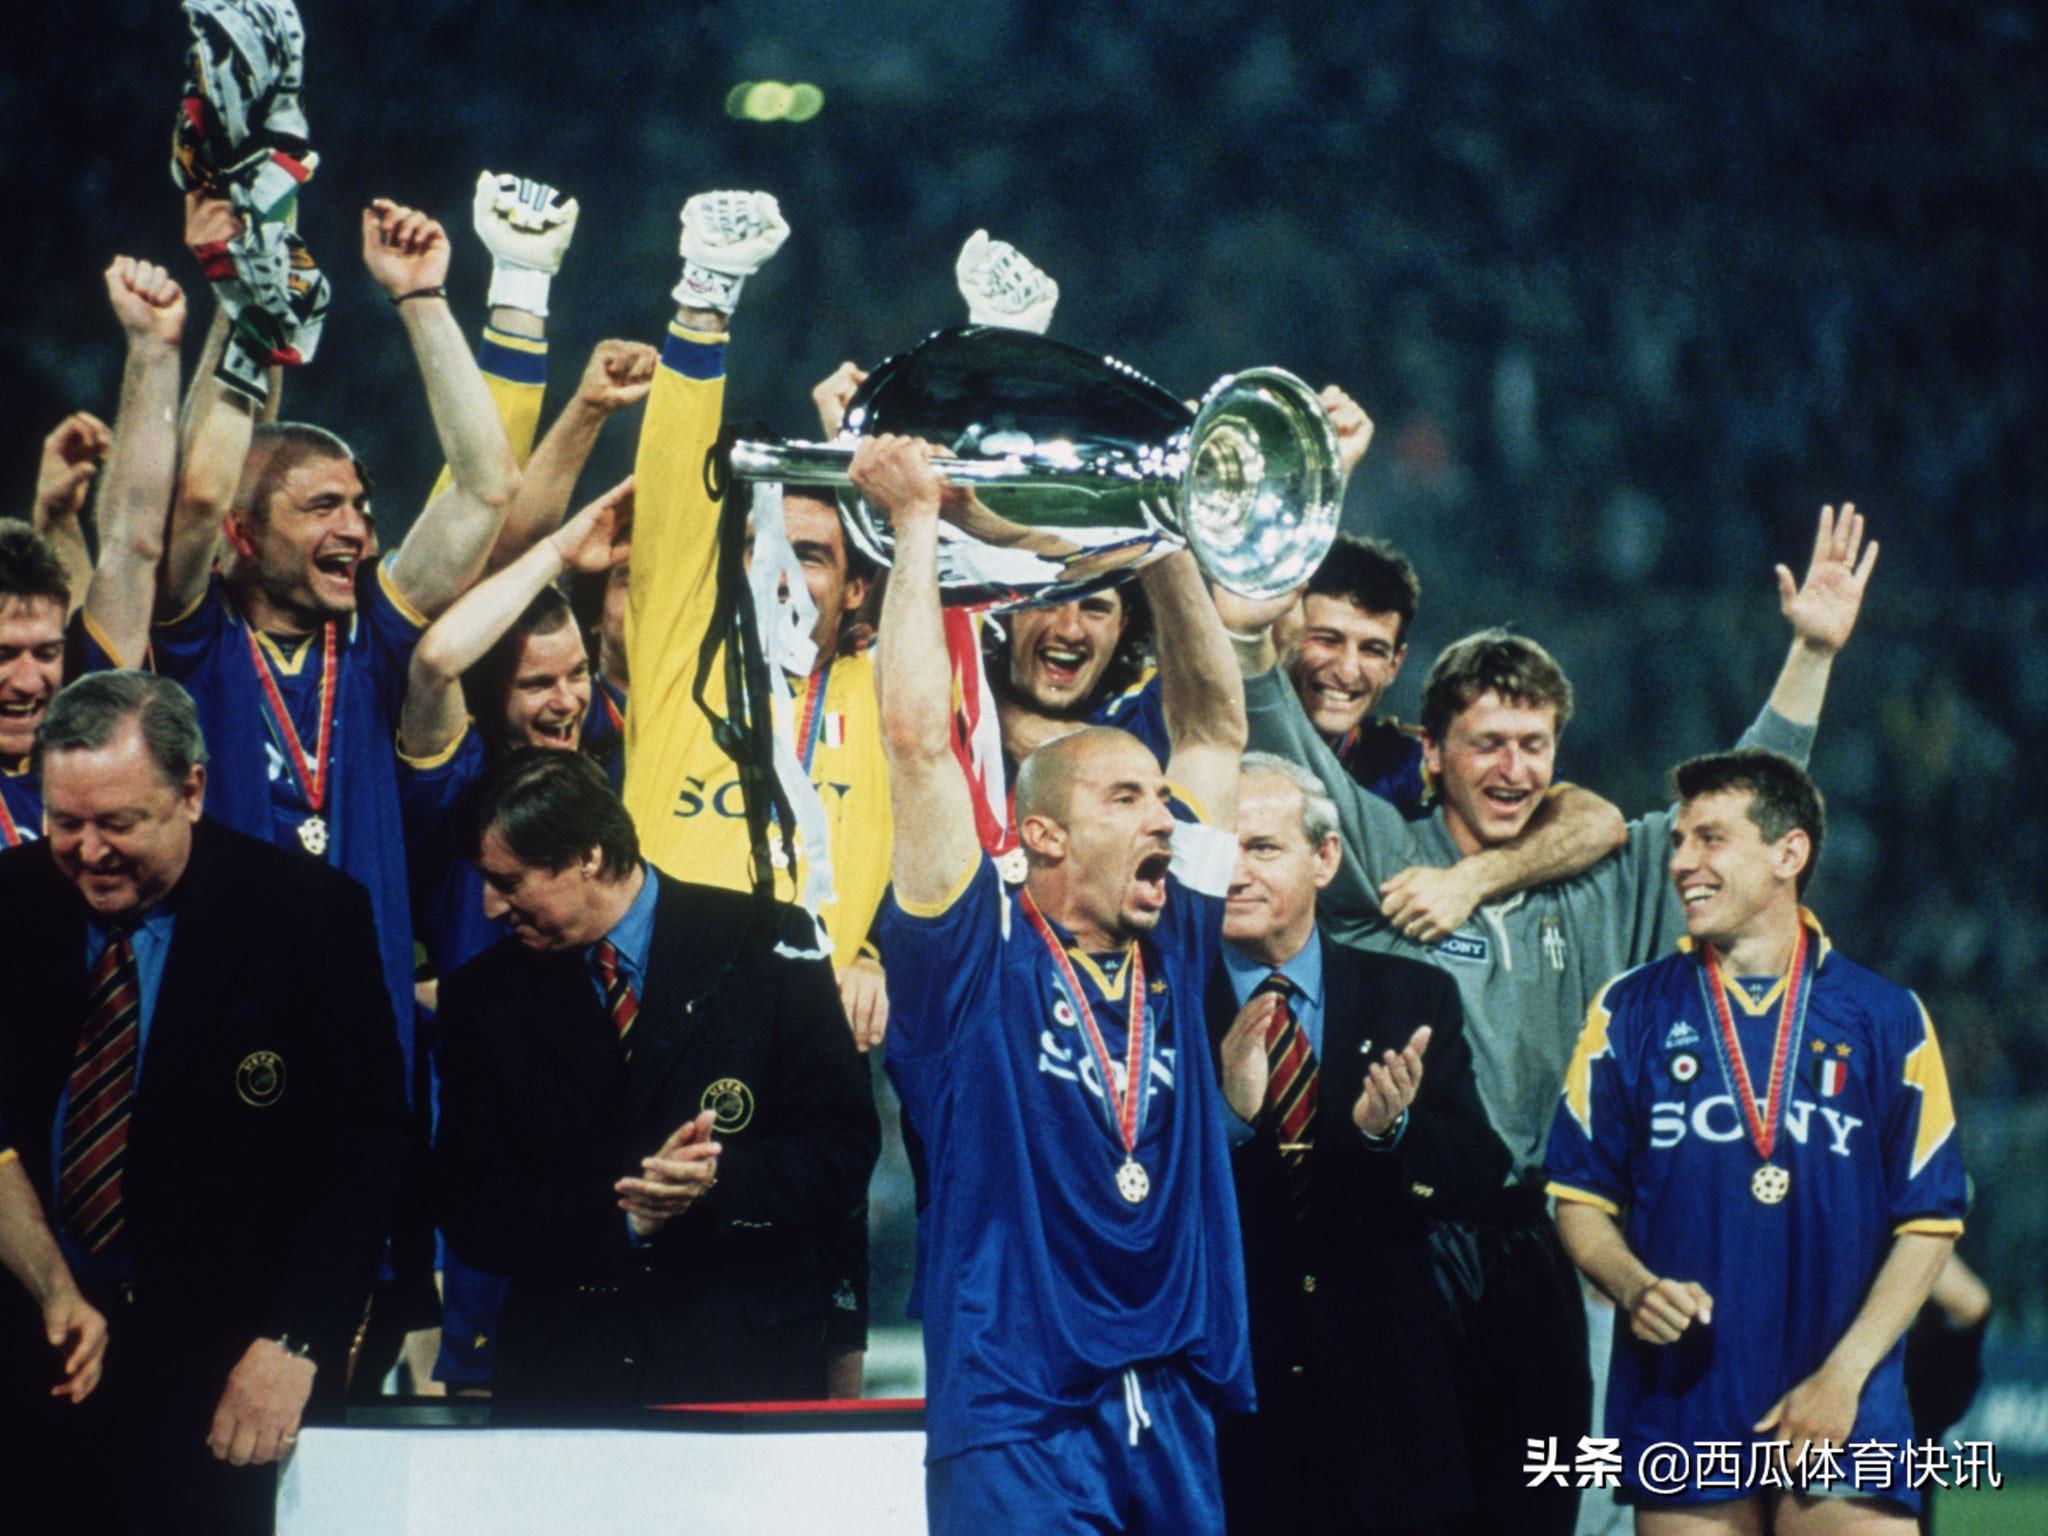 95至96欧冠决赛 96年欧冠决赛回忆——尤文图斯(2)